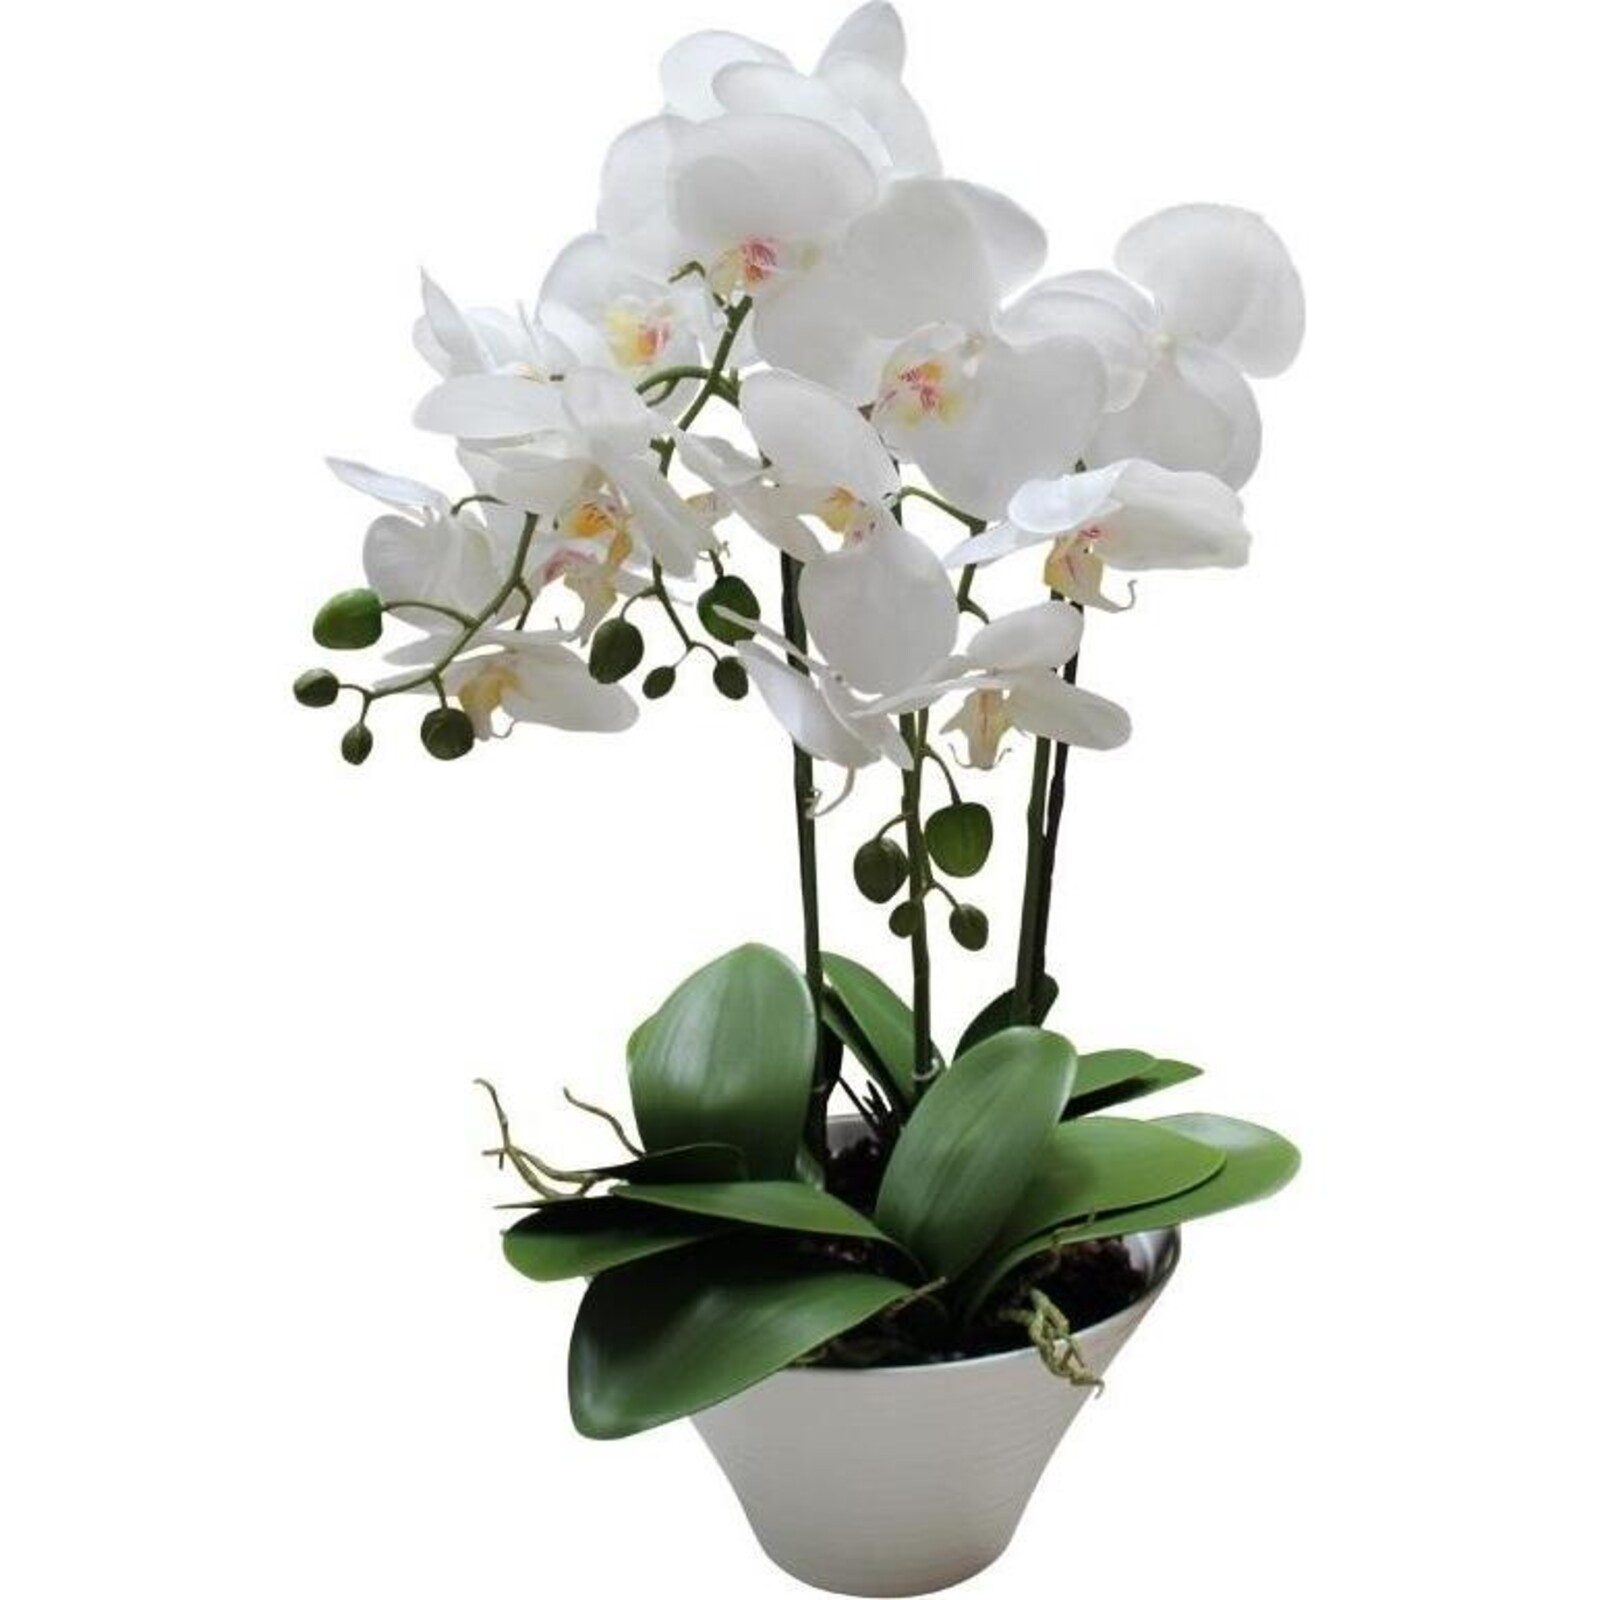 Imitation Orchid Elegant White